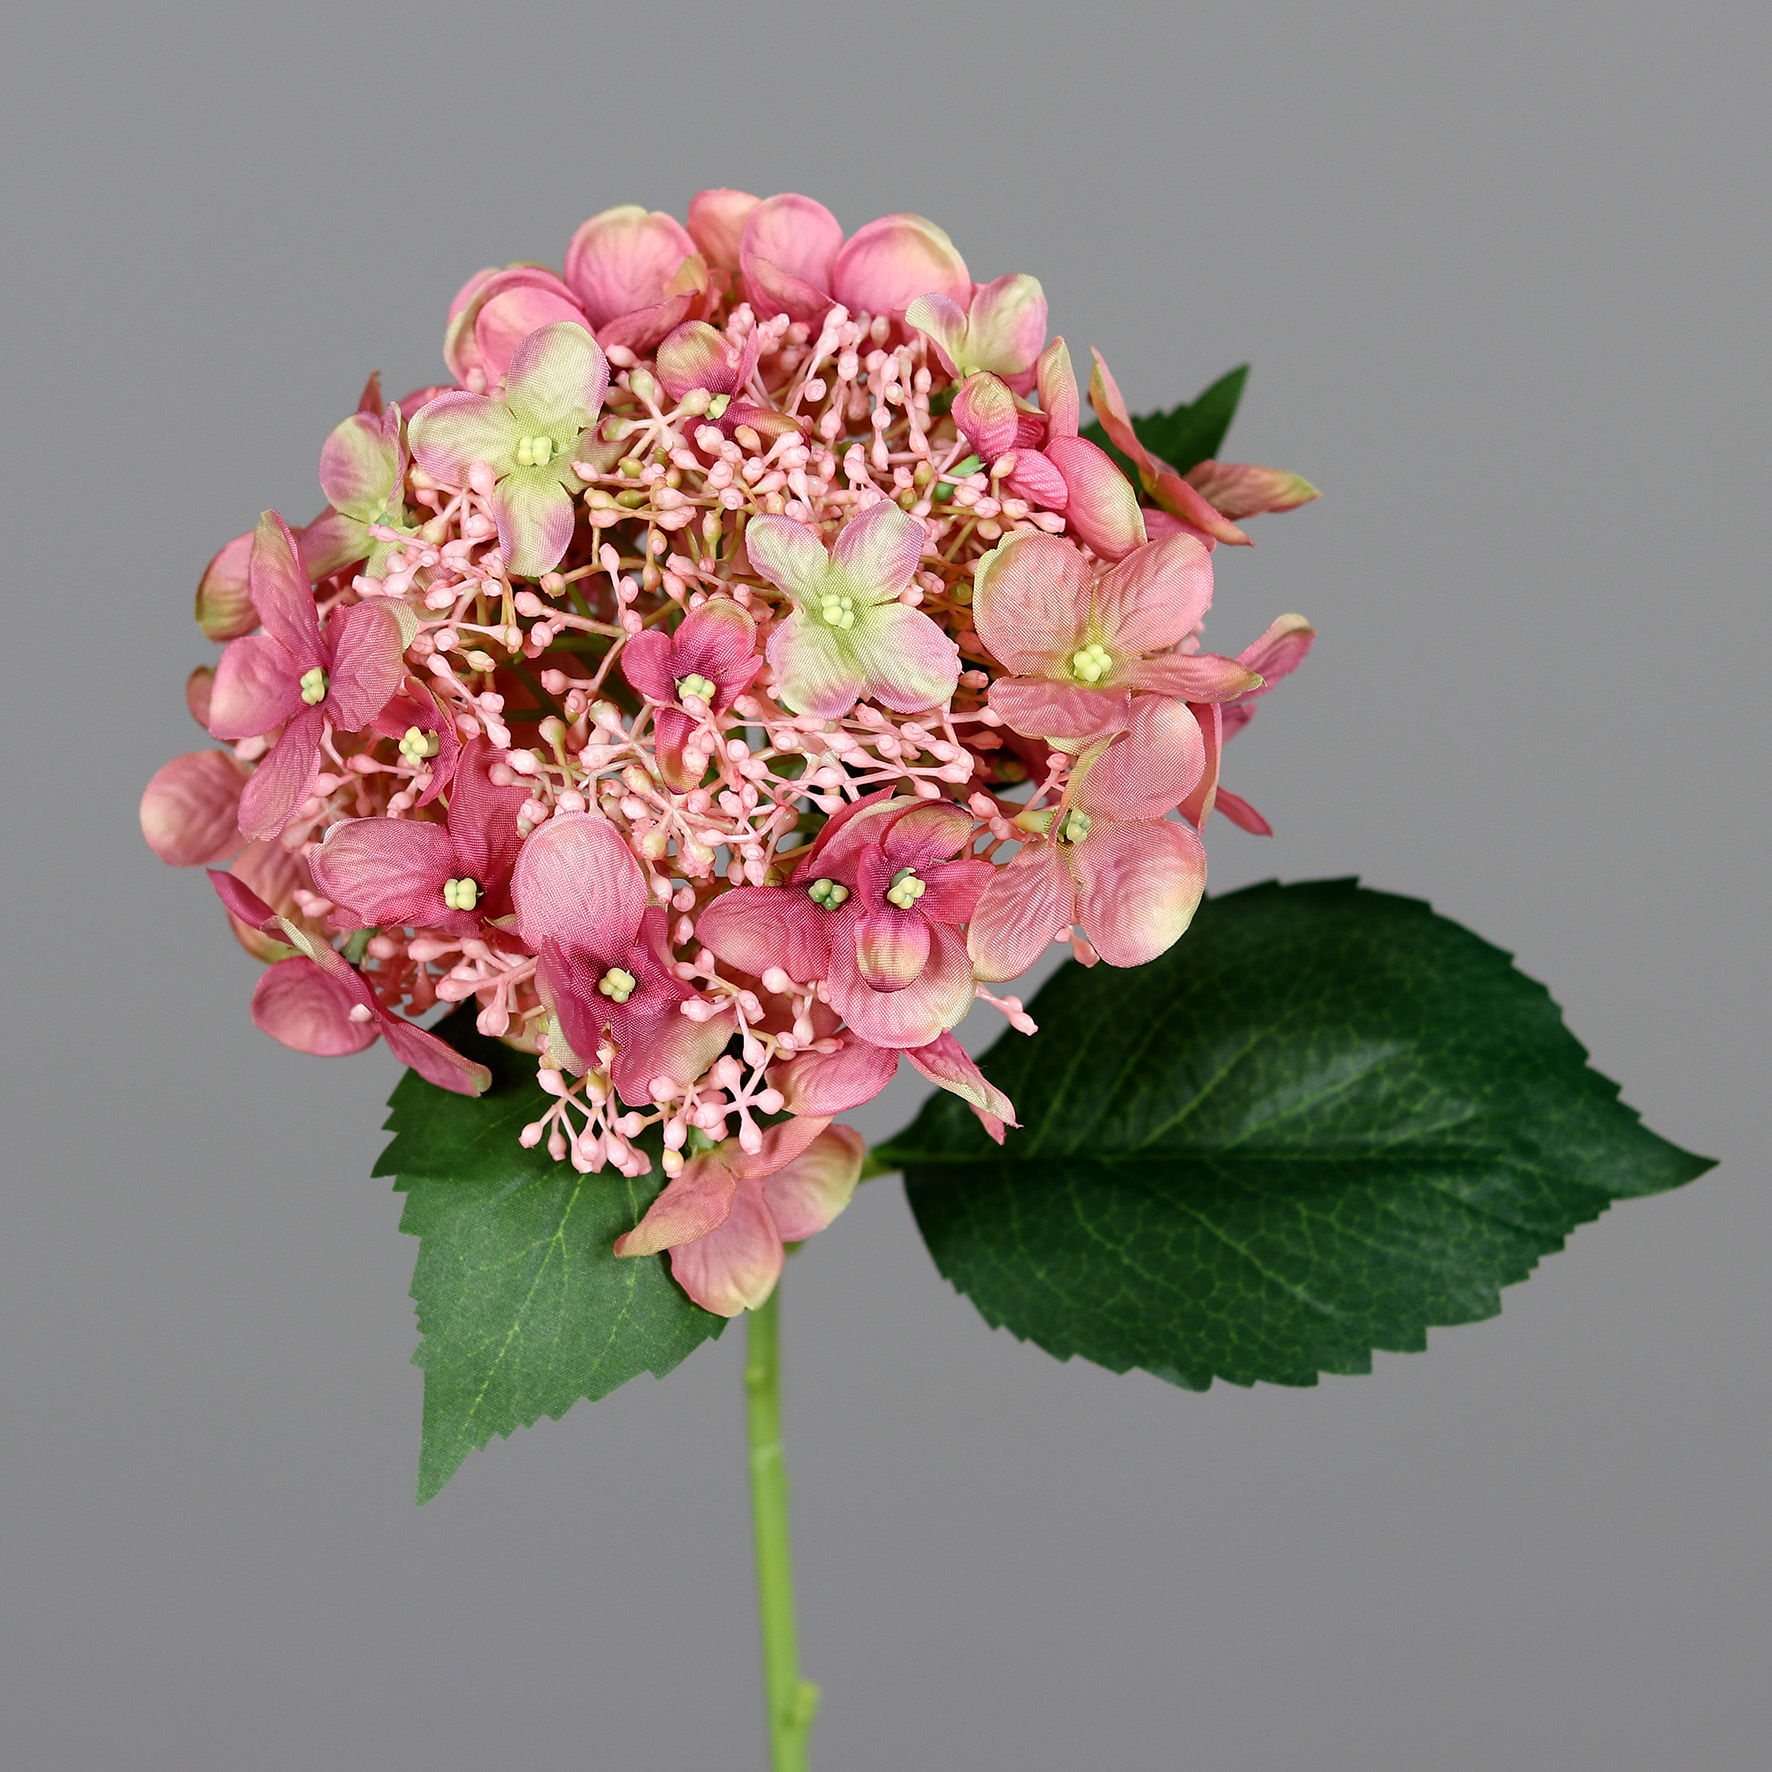 Hortensie DP 52cm Hortensien rosa Blumen künstliche Hydrangea Sommer Kunstlbumen